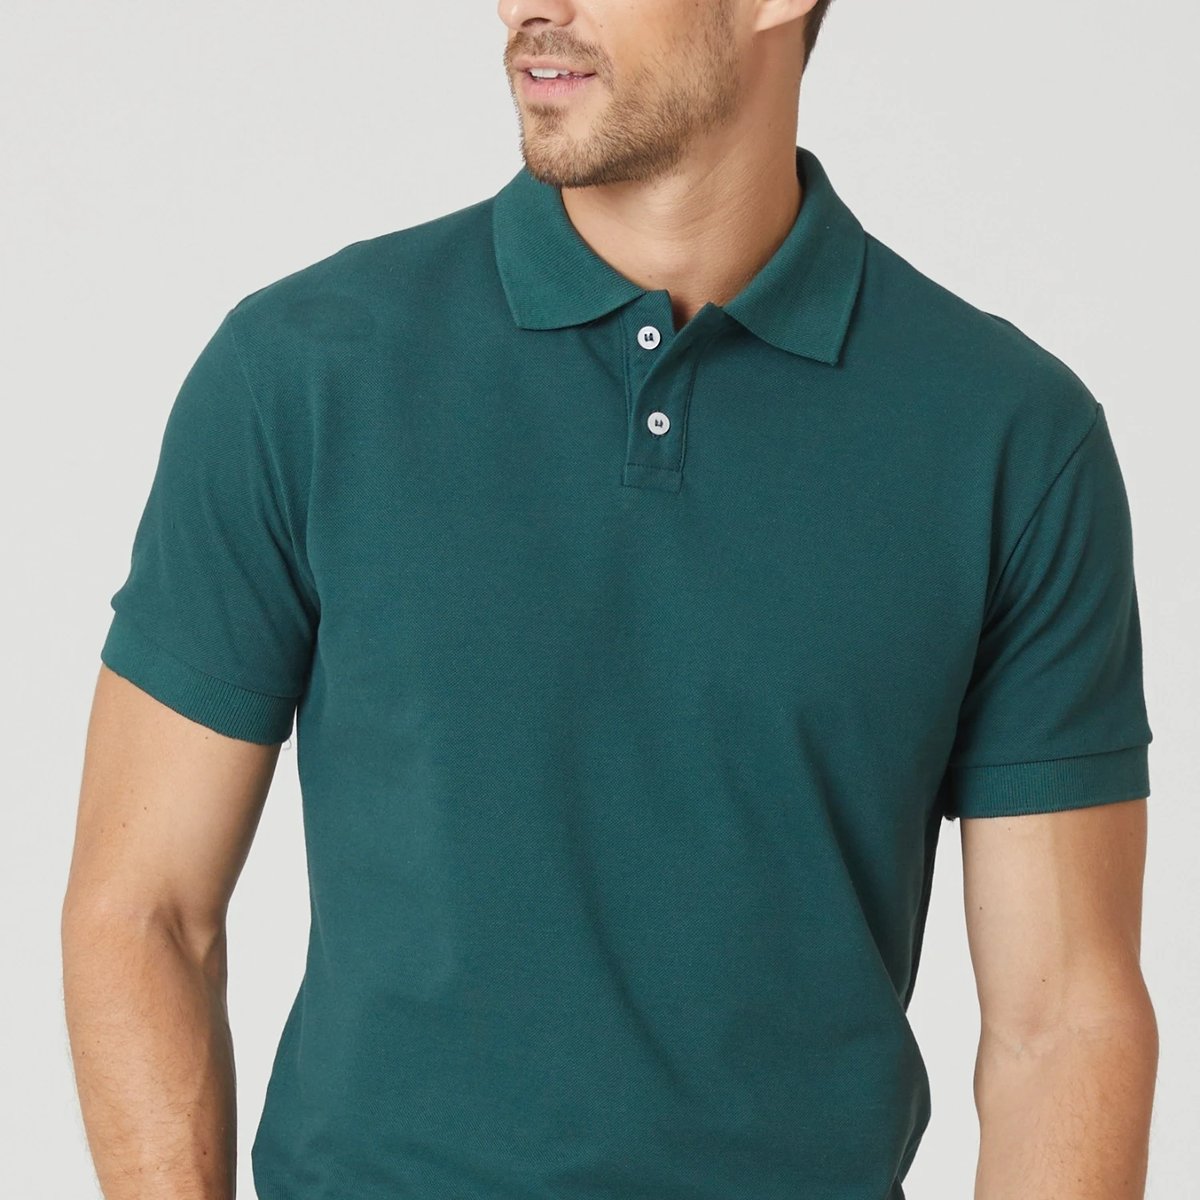 uniforme-jardineiro-camisa-manga-curta-verde